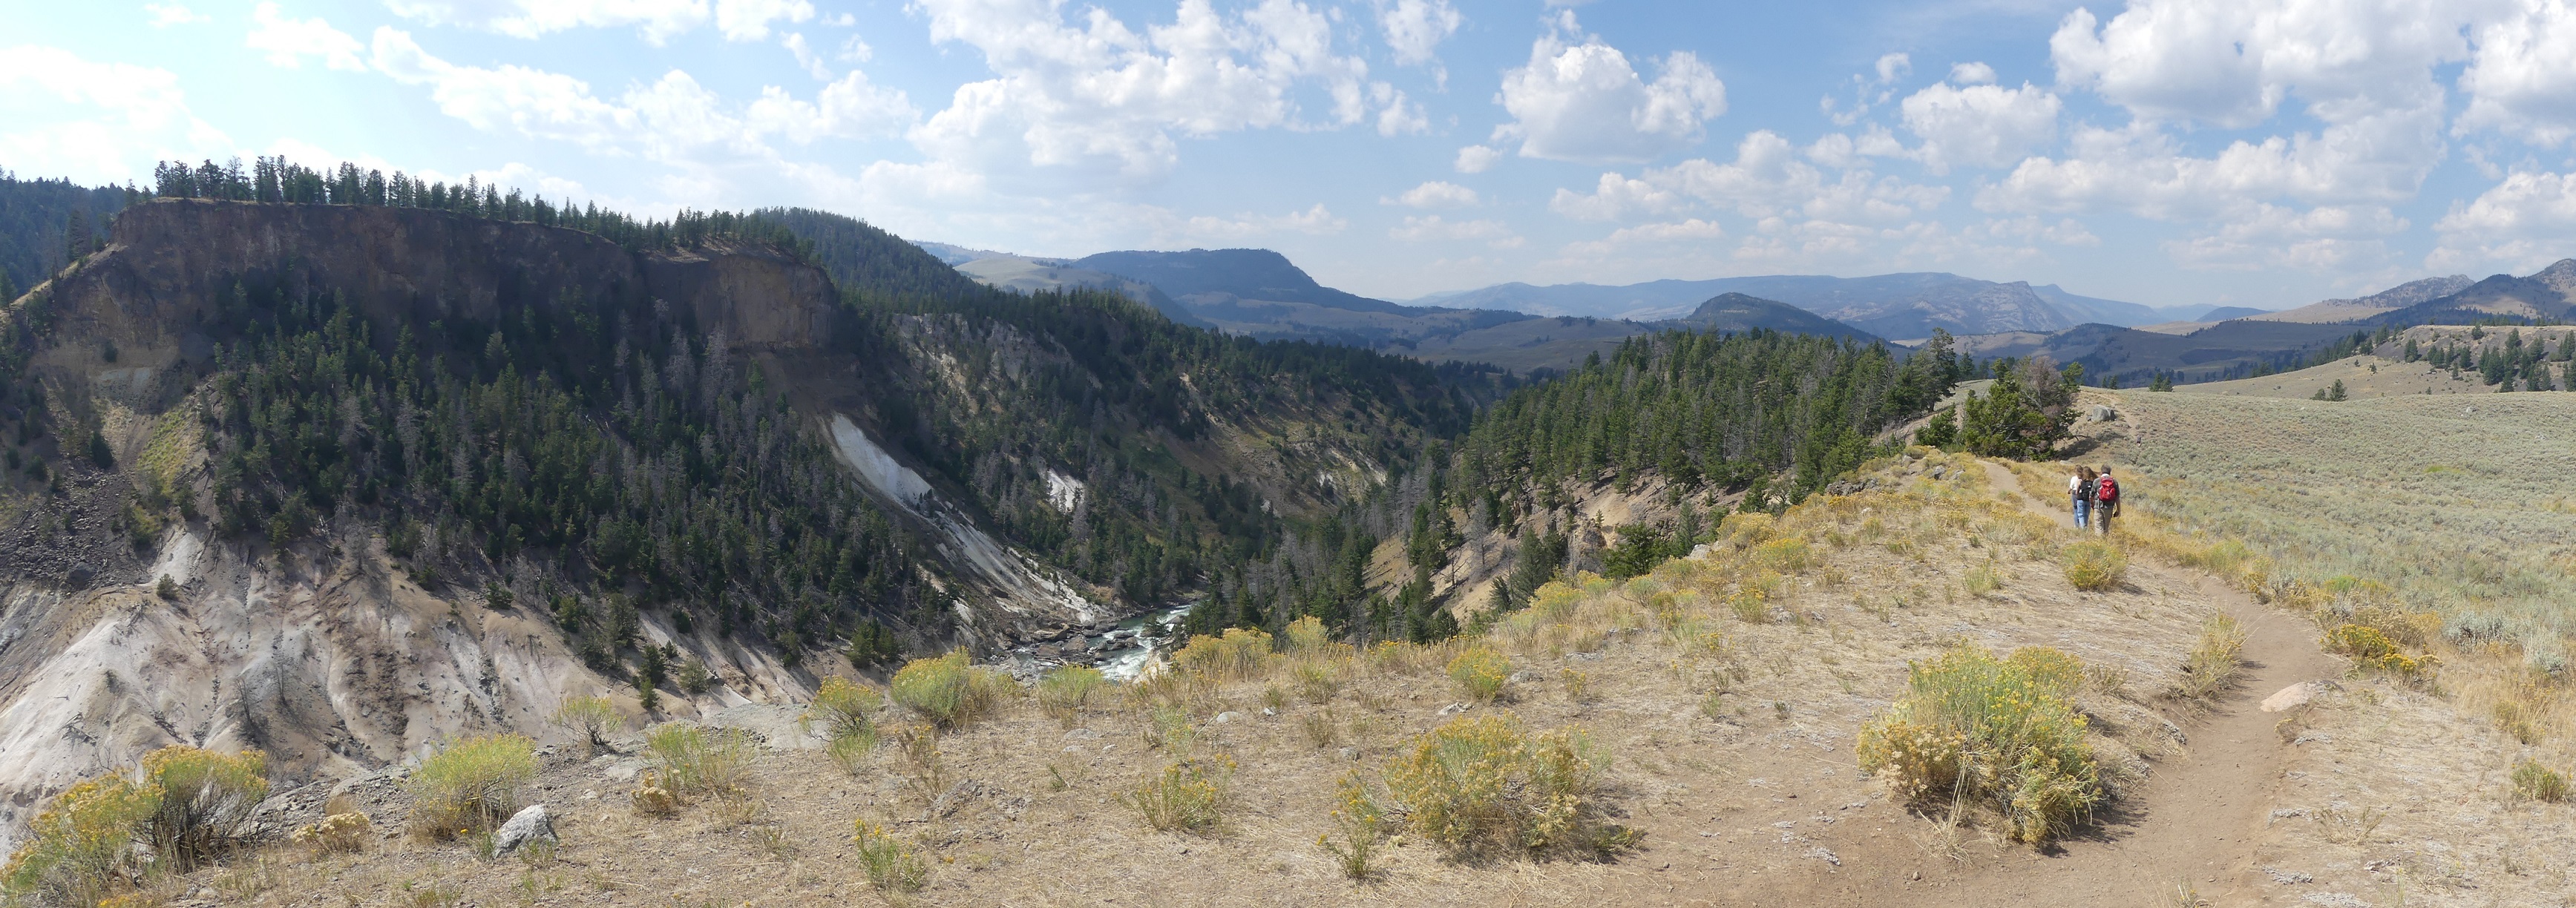 Yellowstone river Picnic Area